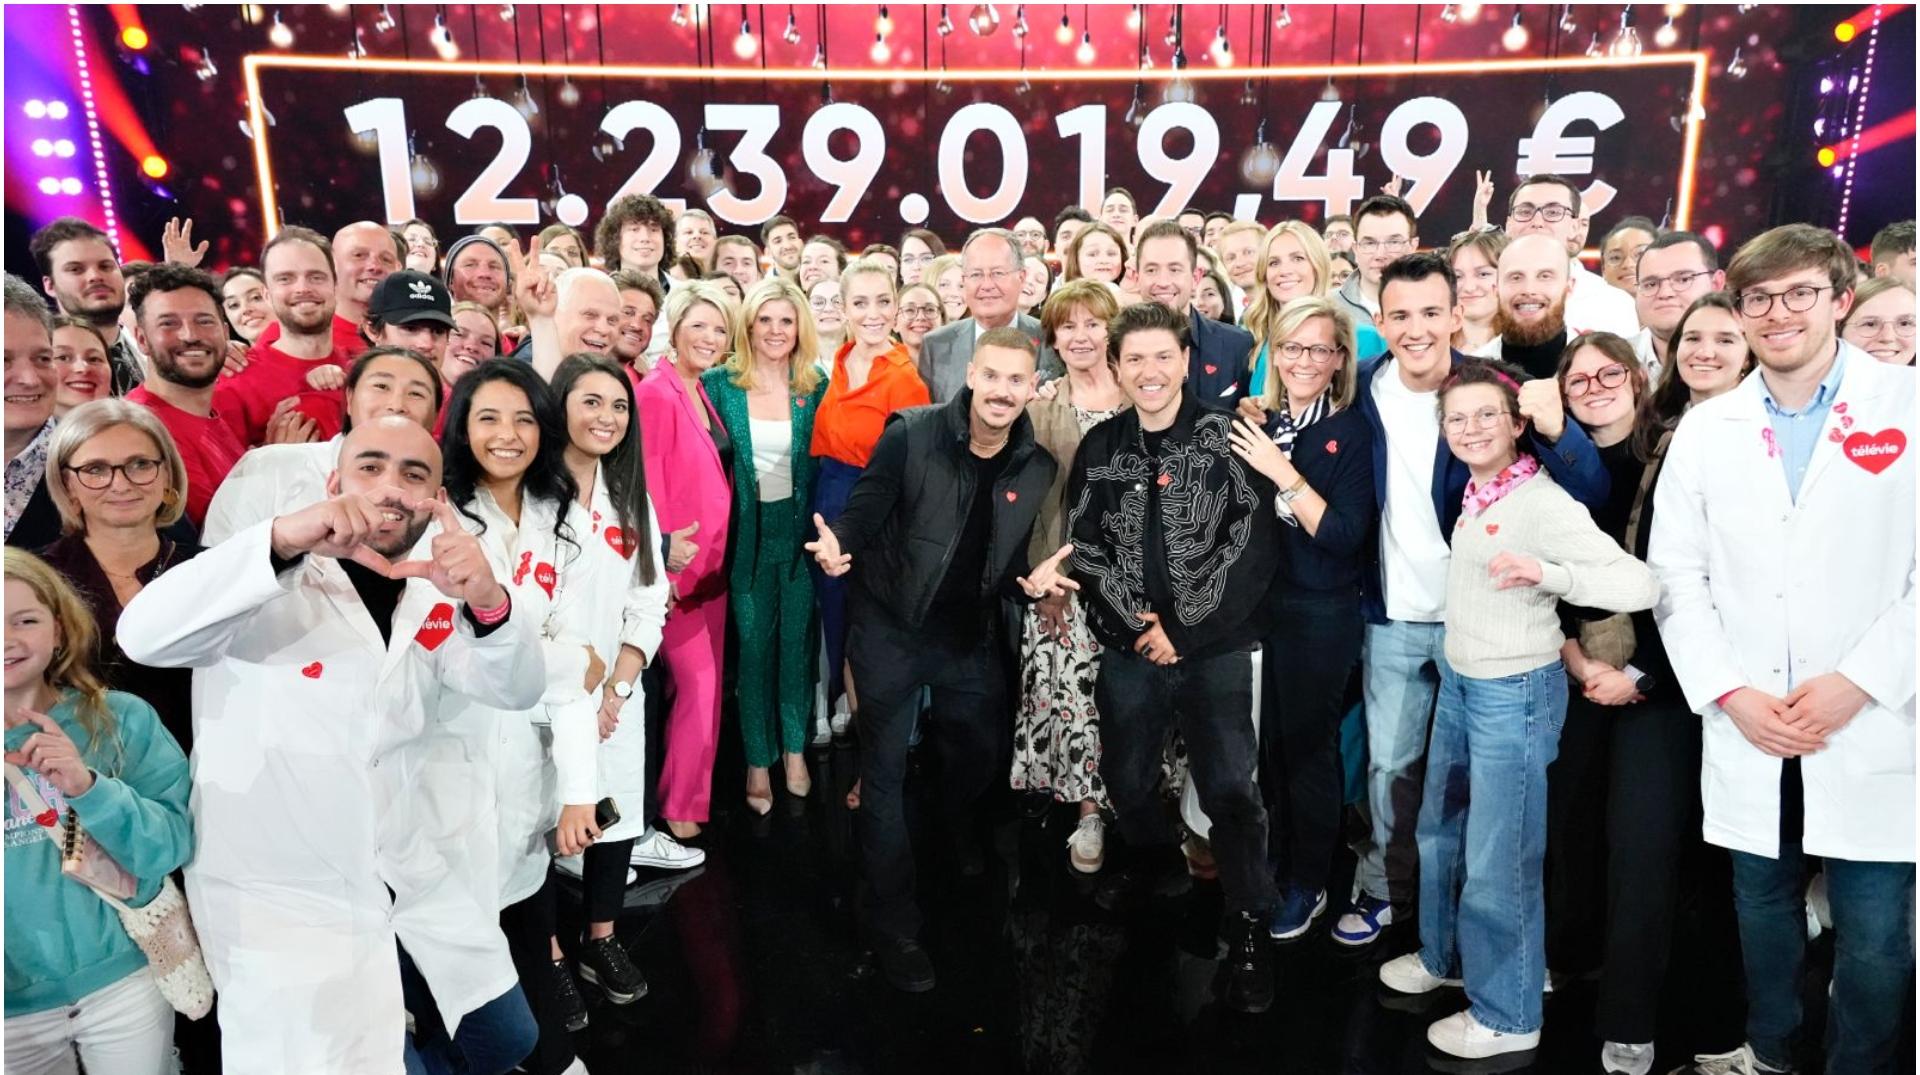 Tournai : le Télévie bat un nouveau record avec 12.239.019,49 € de dons